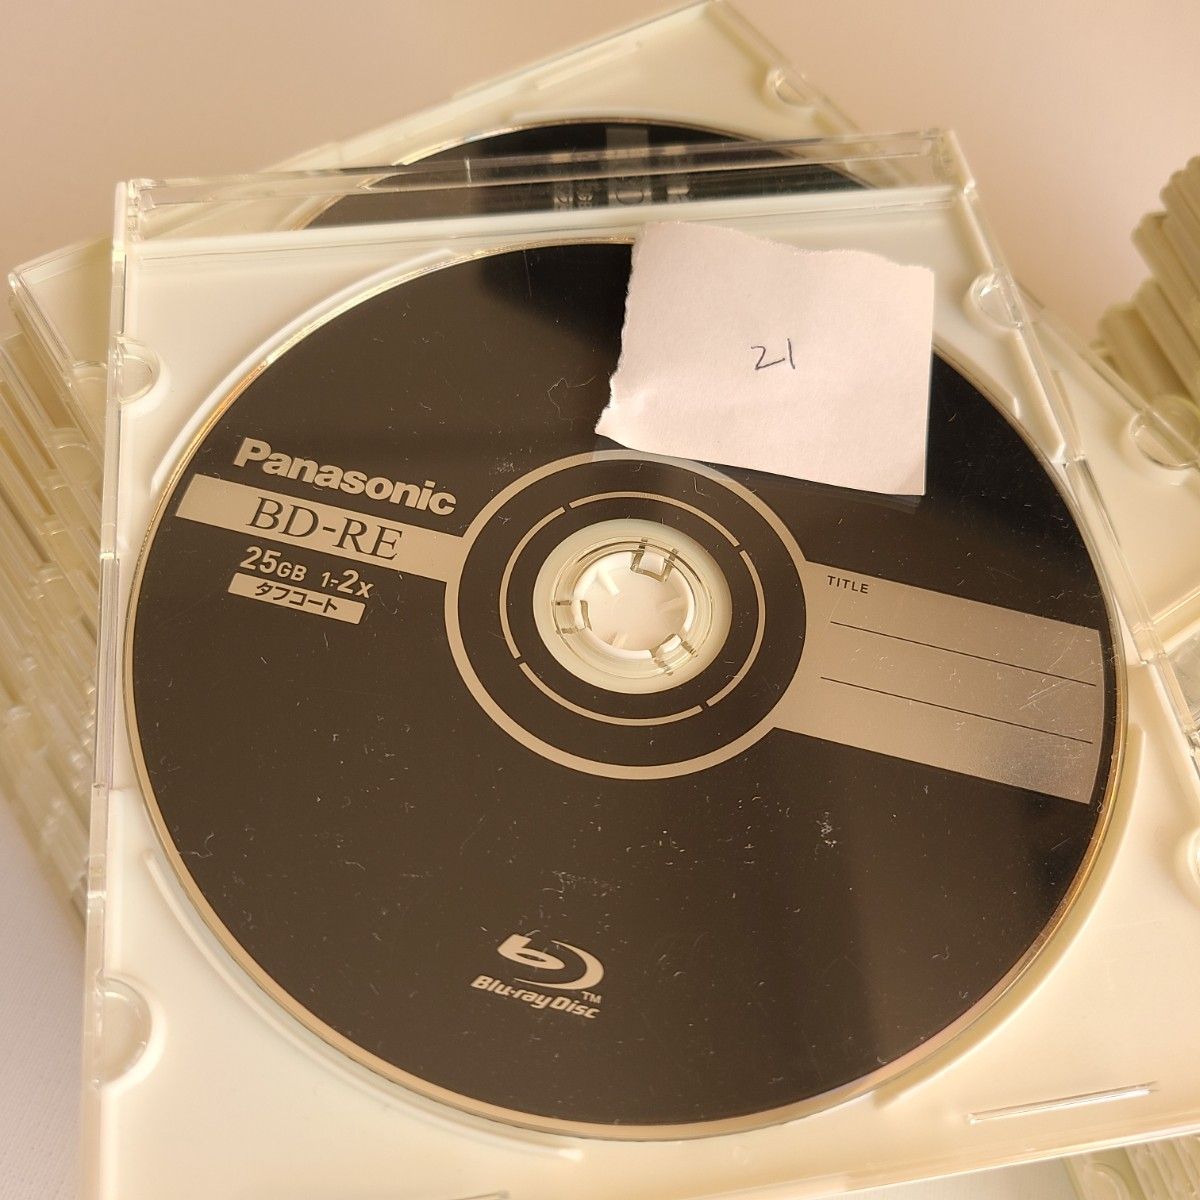 BD-RE 25GB 1-2x 【70枚】2倍速ブルーレイディスク 繰り返し録画用